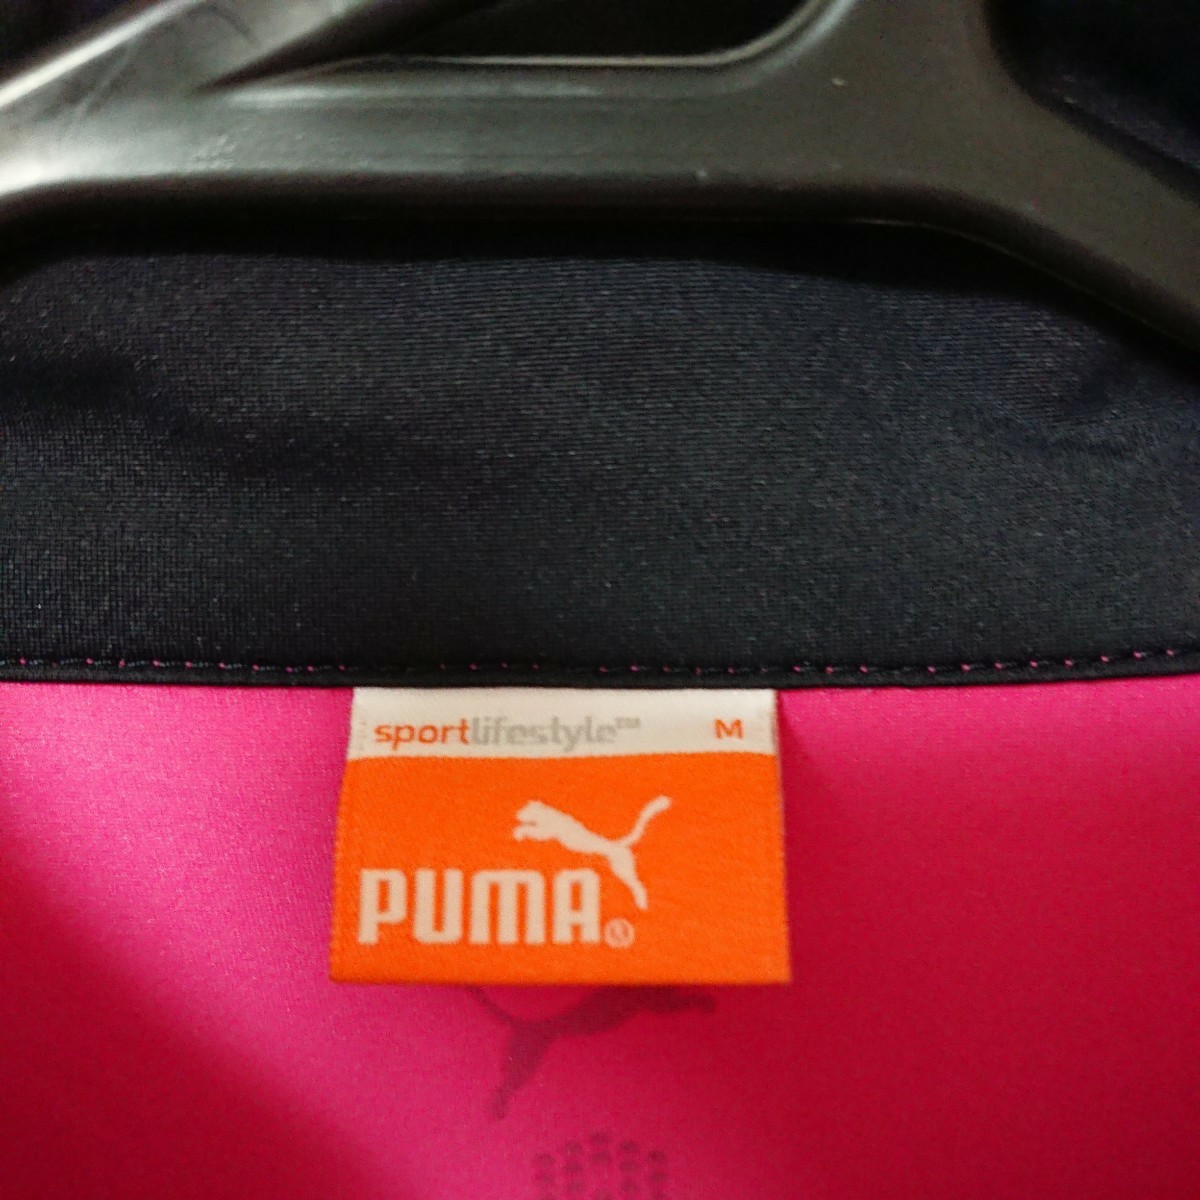 PUMA GOLF Puma Golf спорт тренировка одежда жакет джемпер блузон тонкий розовый чёрный M стрейч популярный переносной 